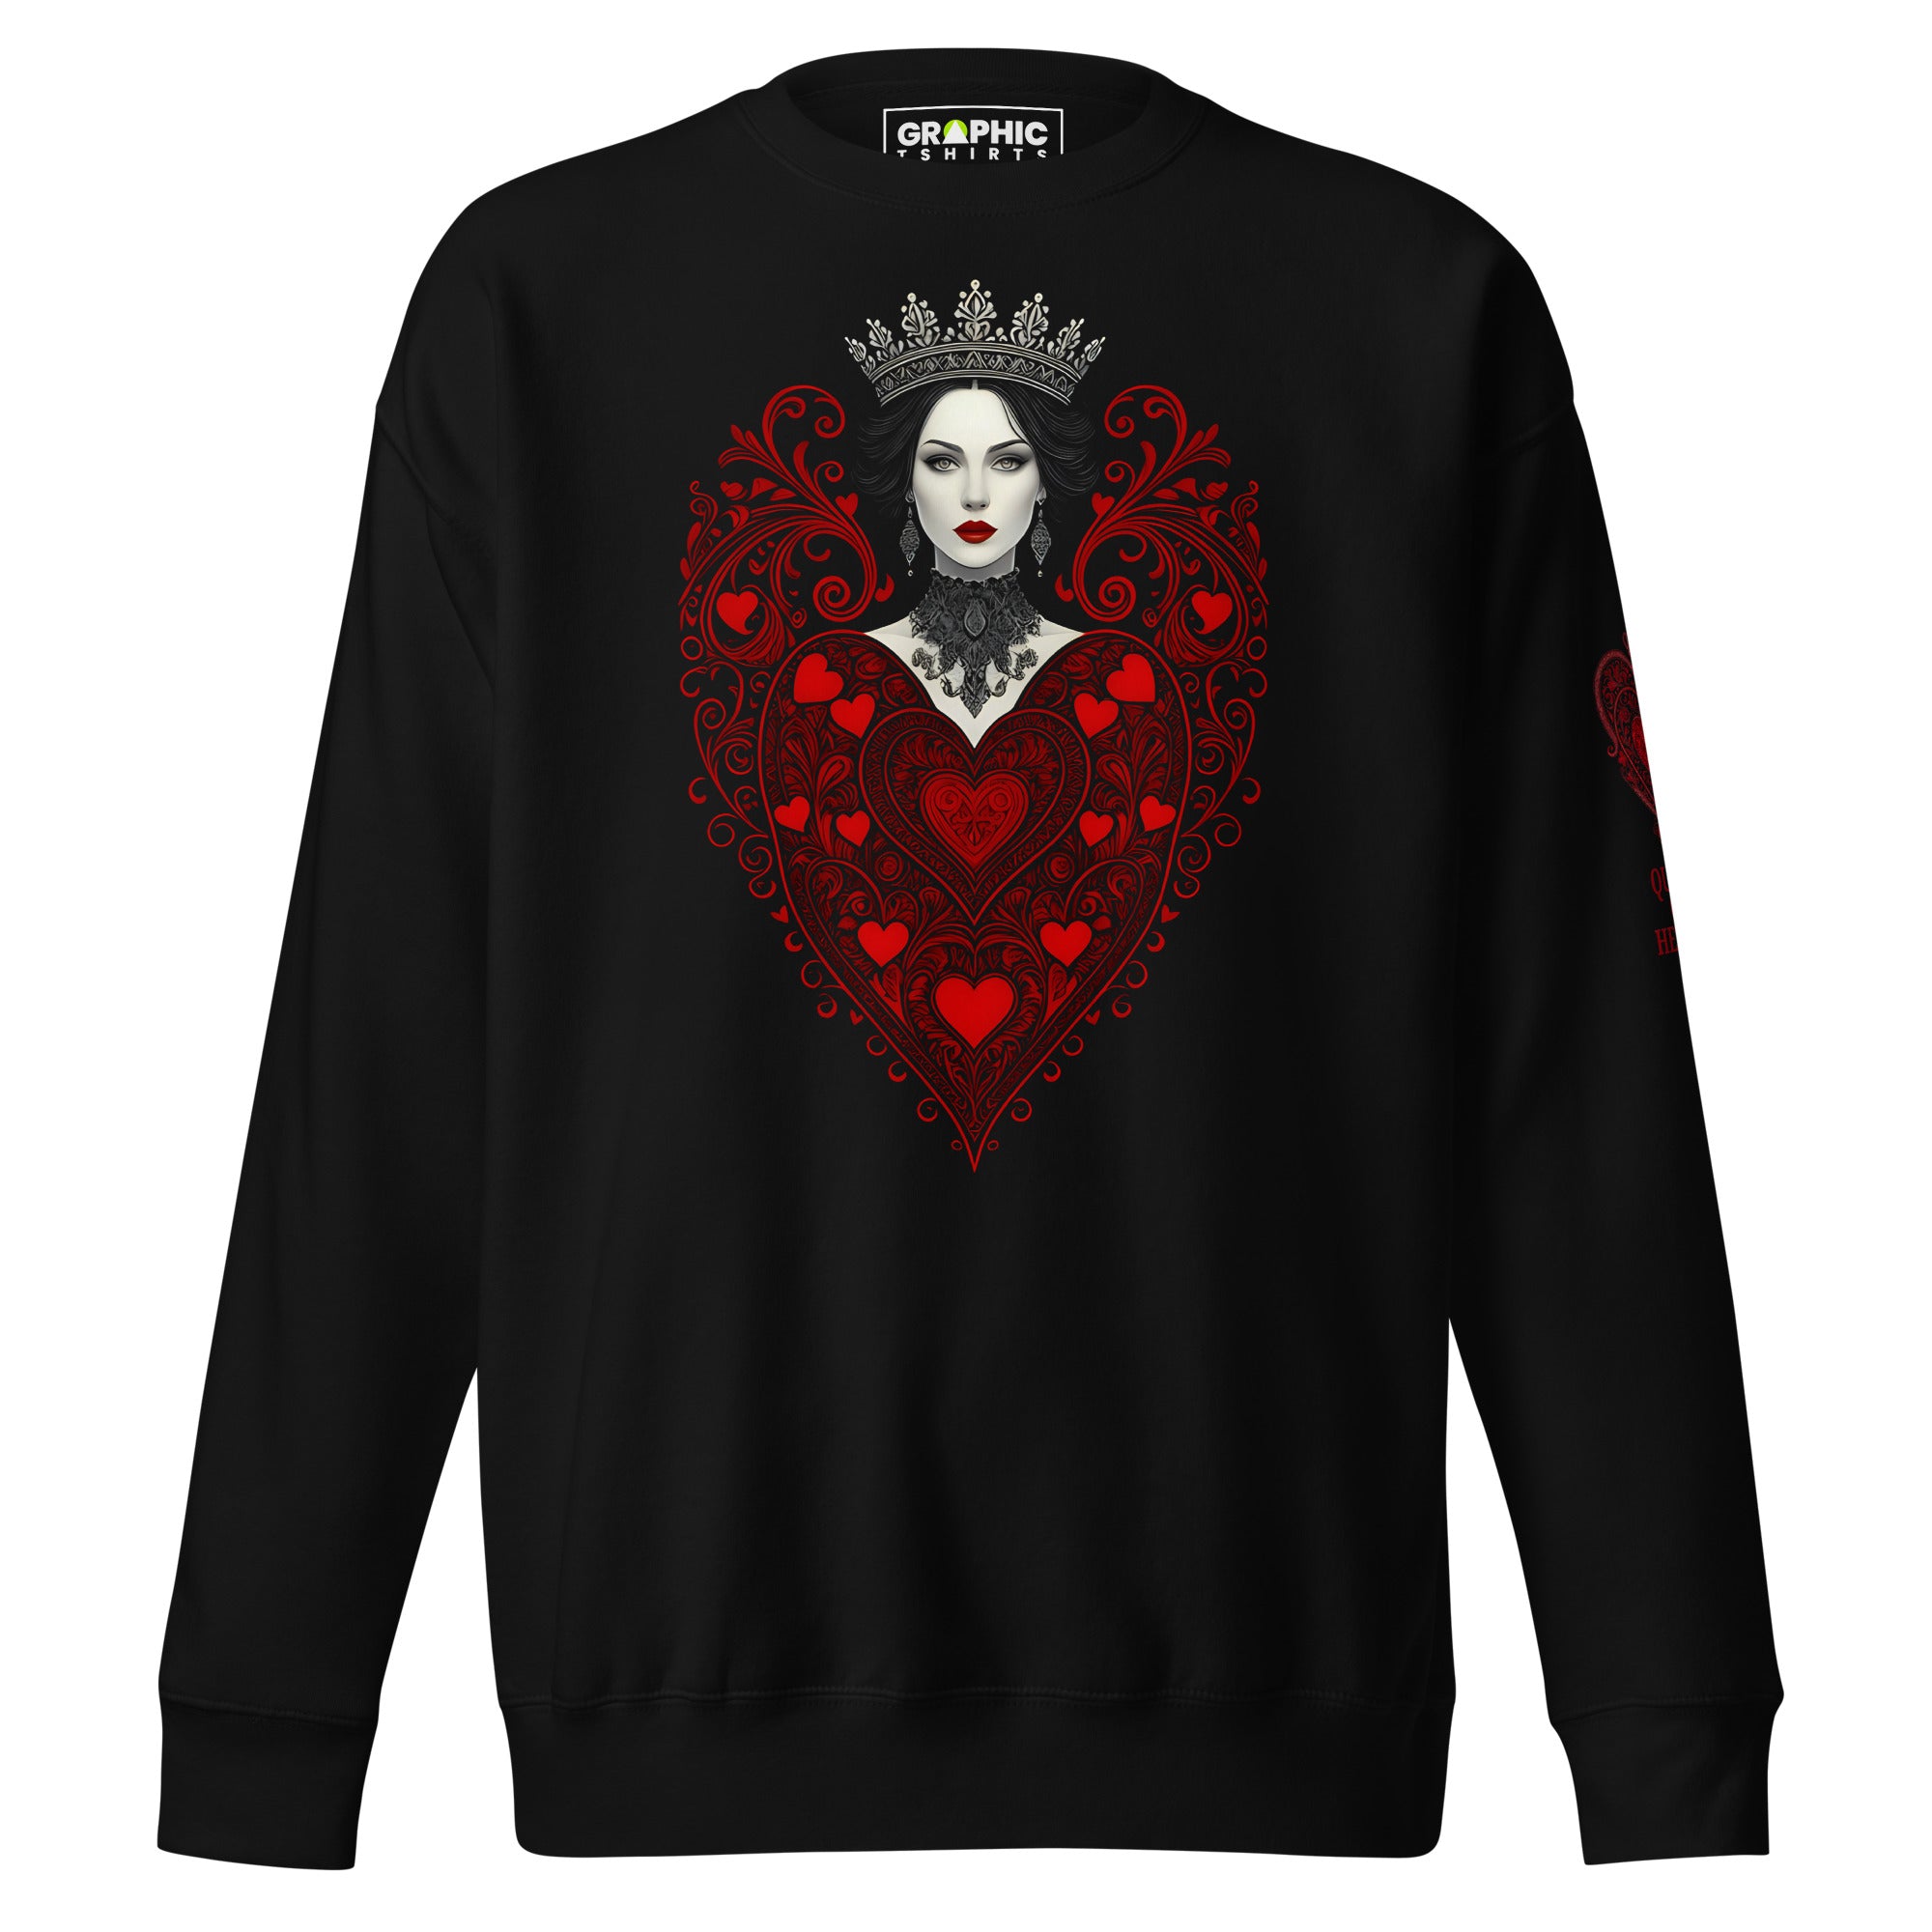 Unisex Premium Sweatshirt - Queen Of Hearts Series v.2